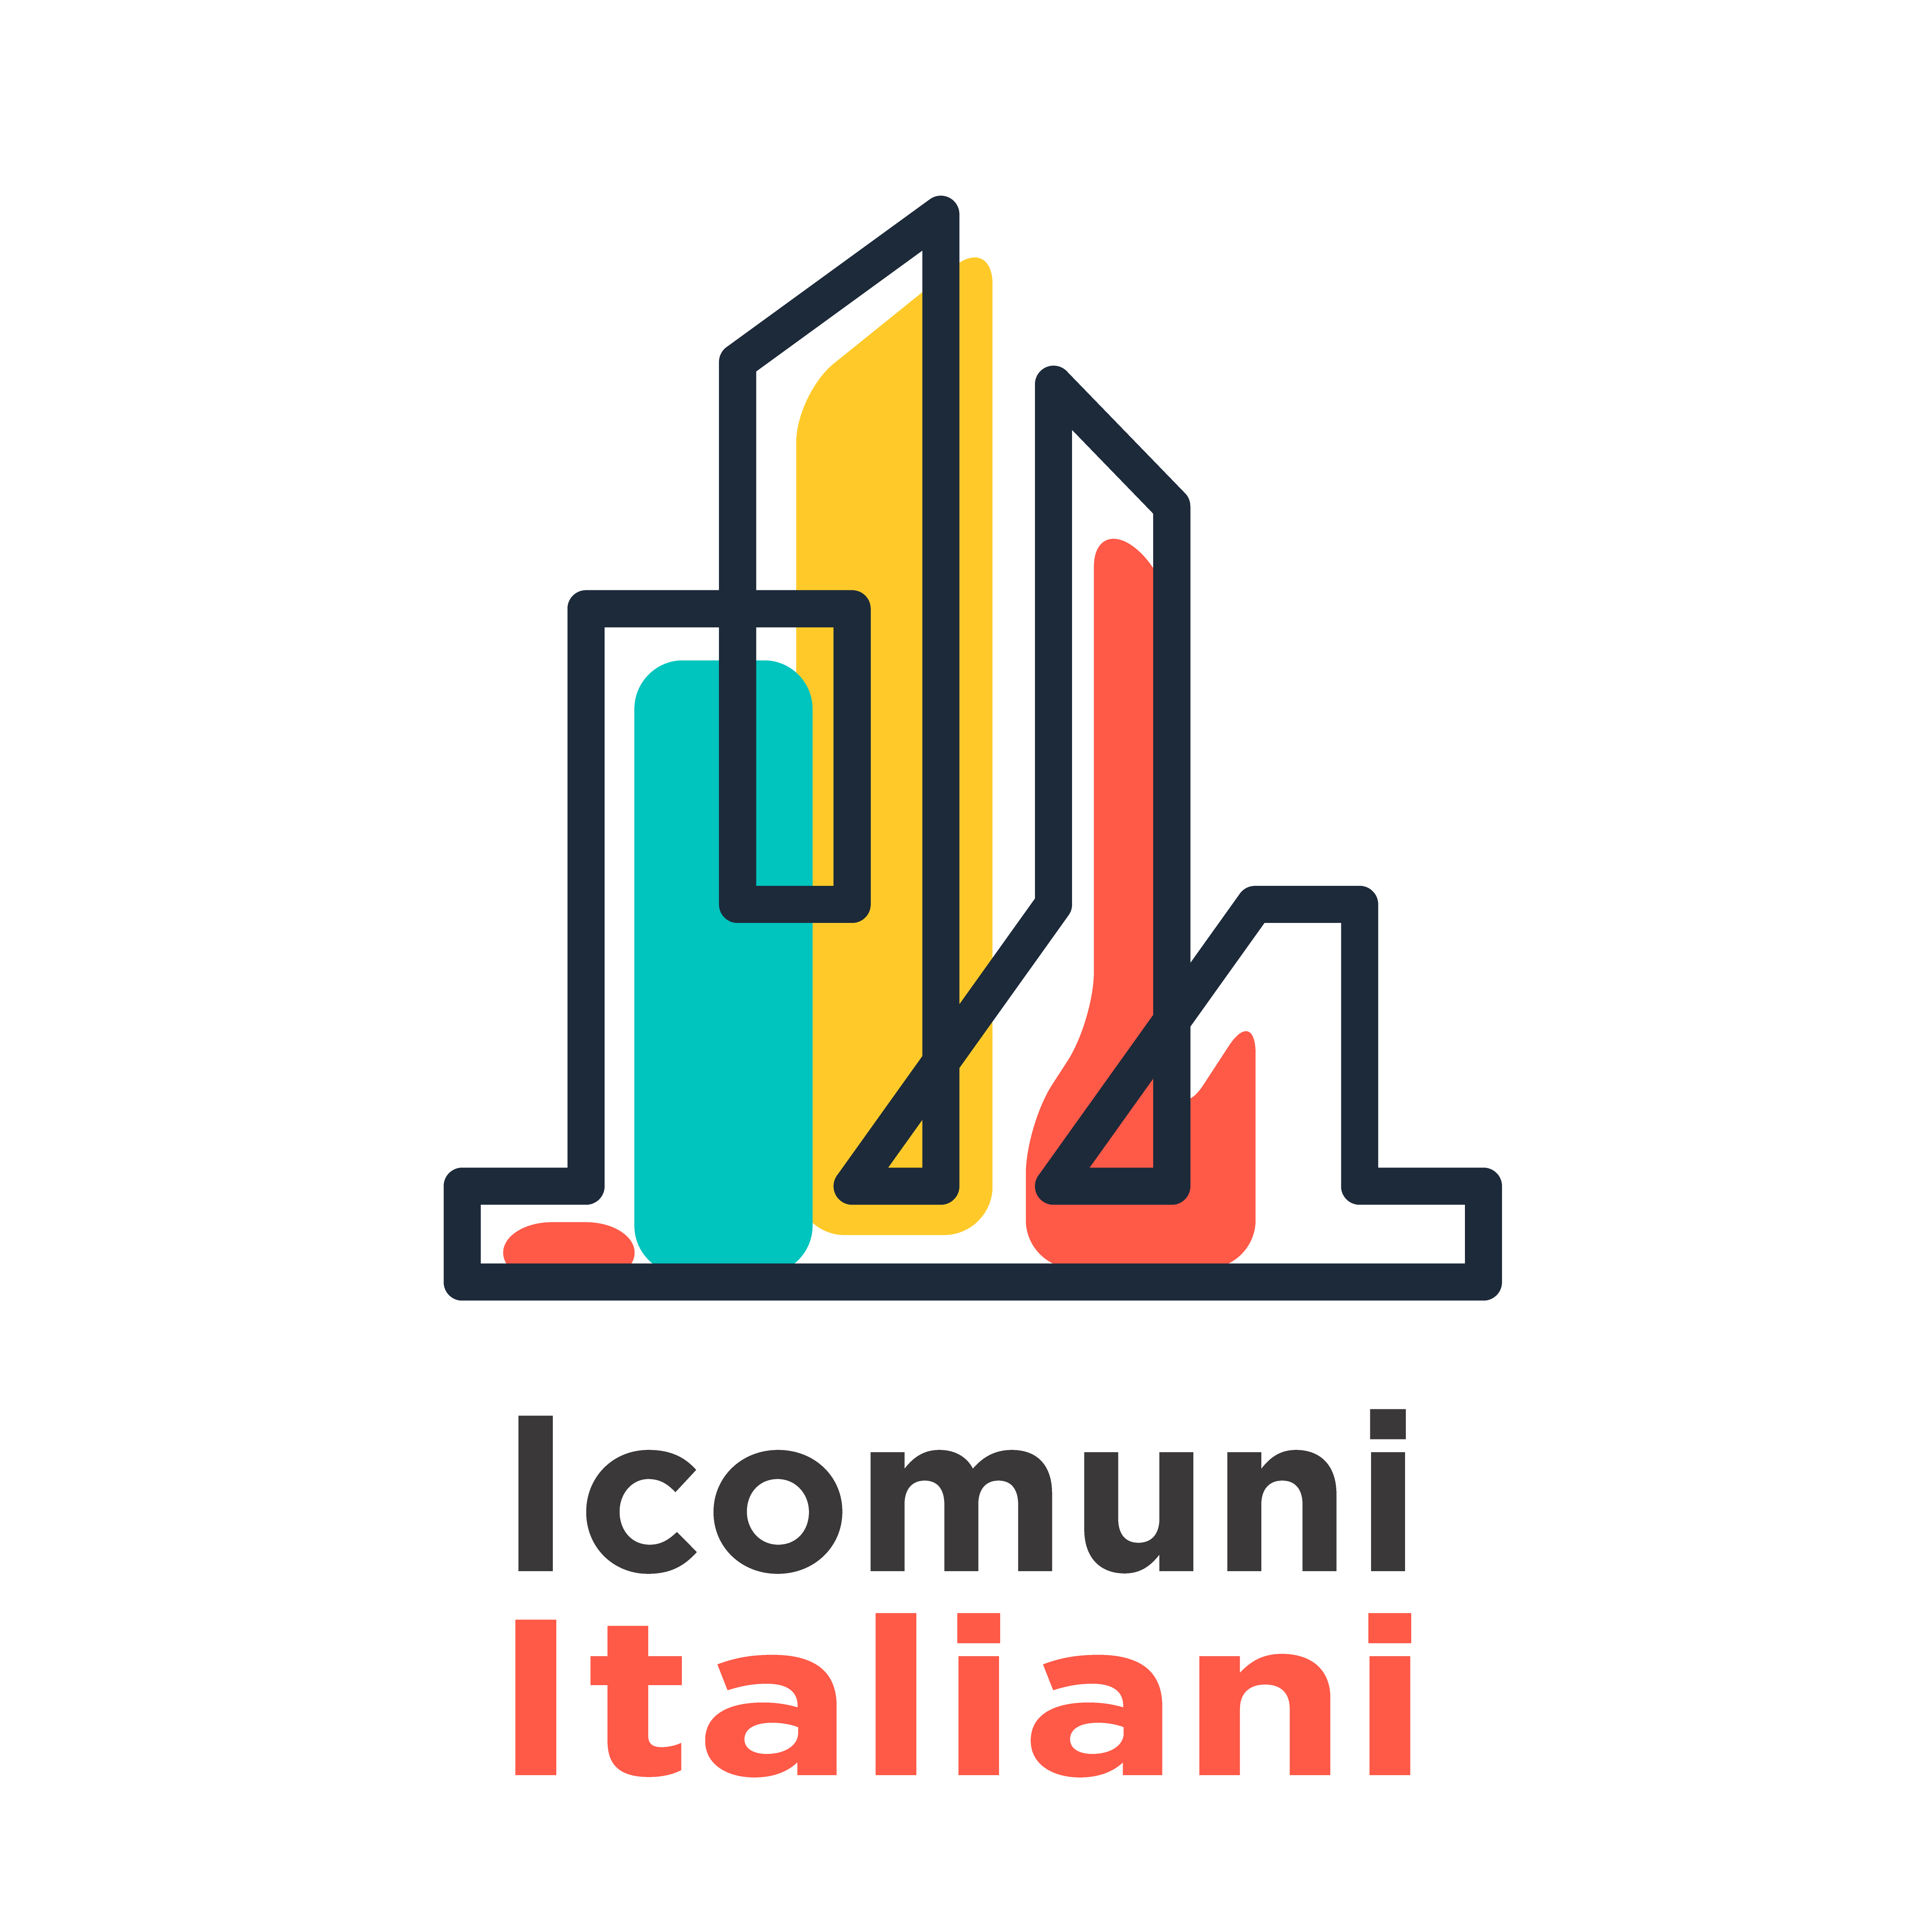 Elenchi di tutti i comuni regioni e province italiane